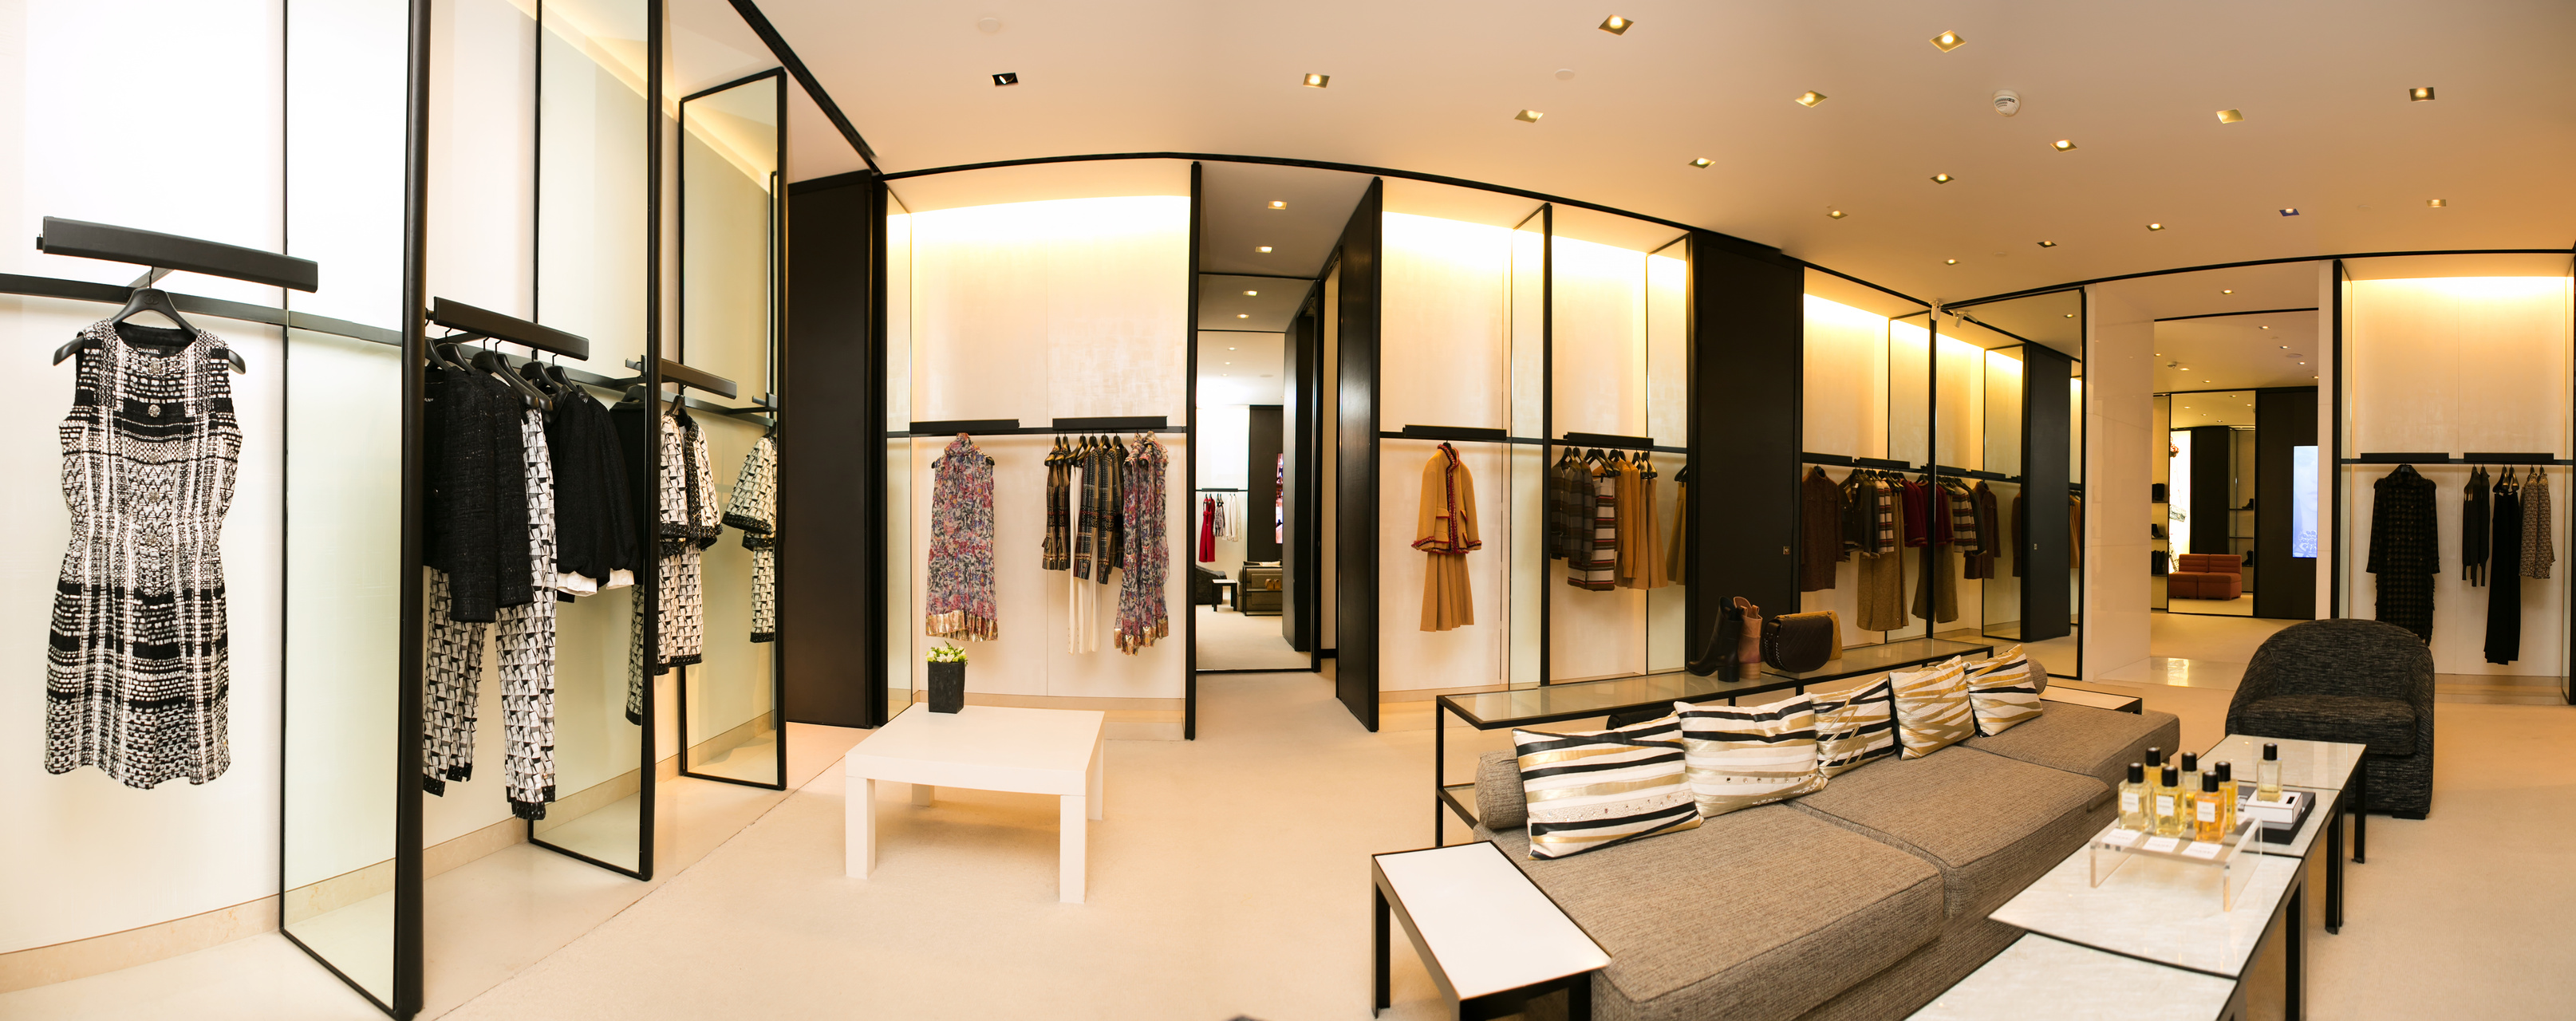 Clothing Boutique Interior